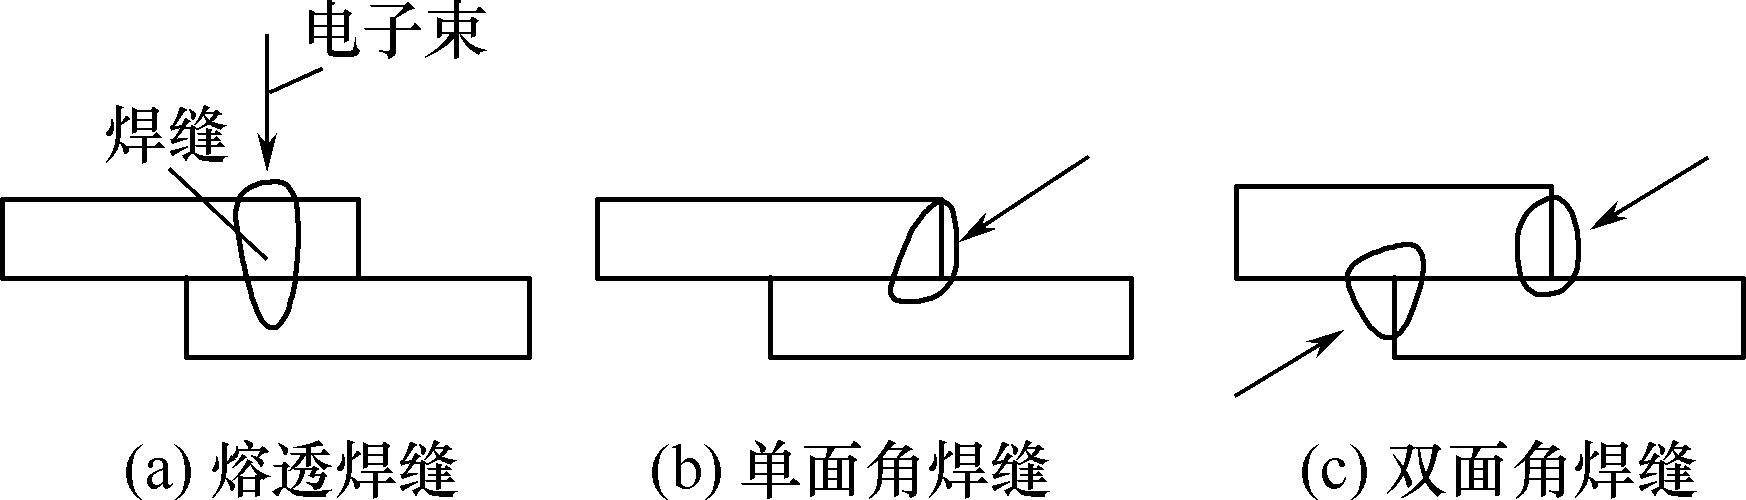 图3.6 电子束焊的搭接接头与焊缝